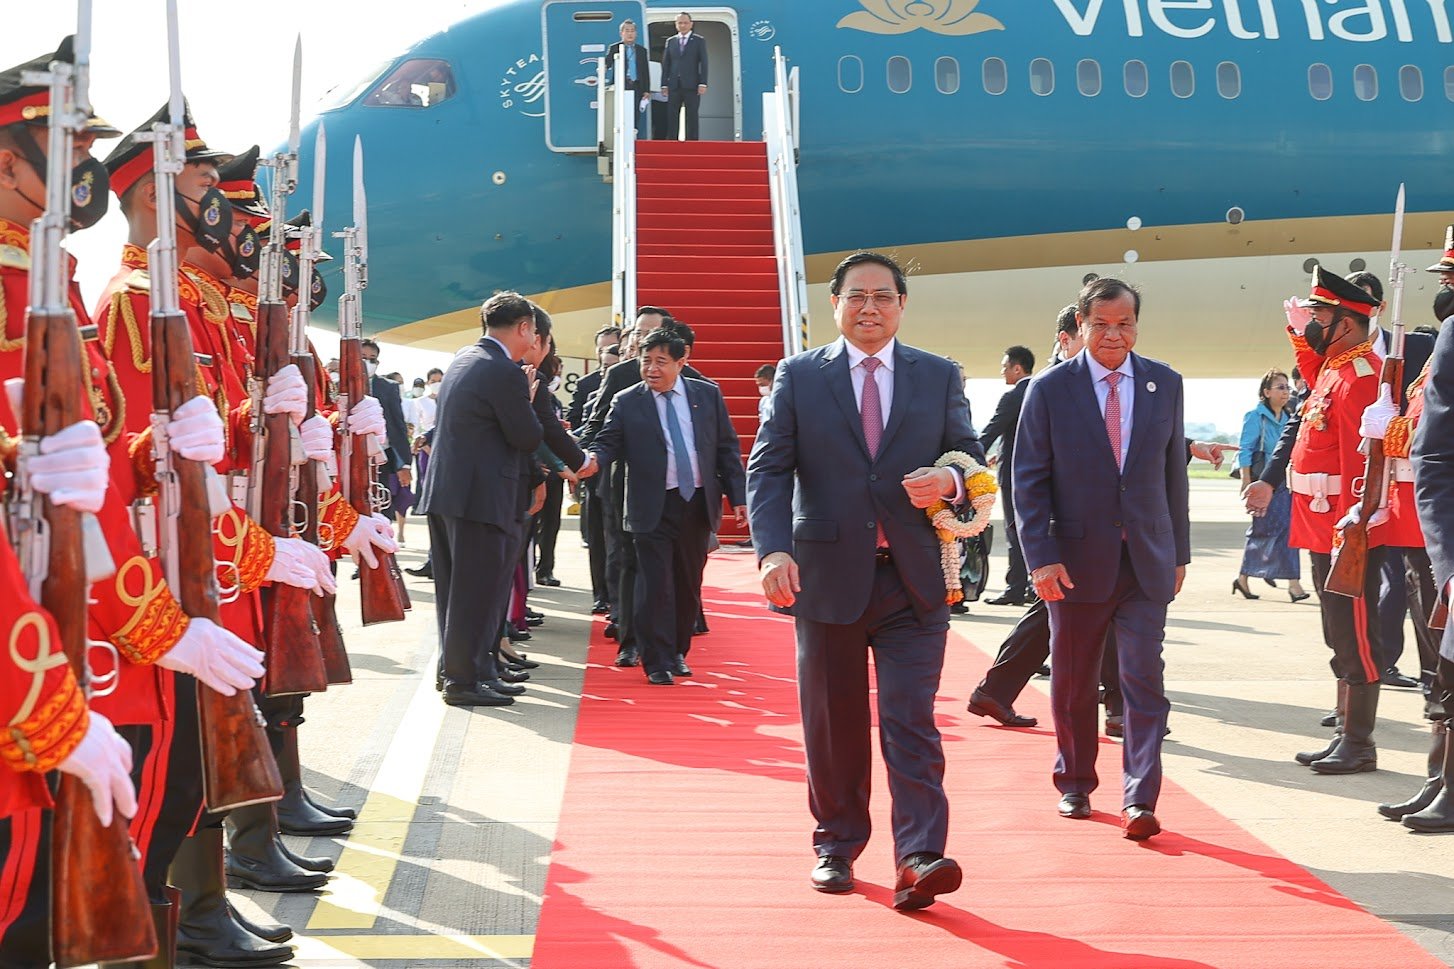 Sân bay Phnom Penh rực rỡ nắng vàng với quốc kỳ Việt Nam và Campuchia. Ảnh: VGP.